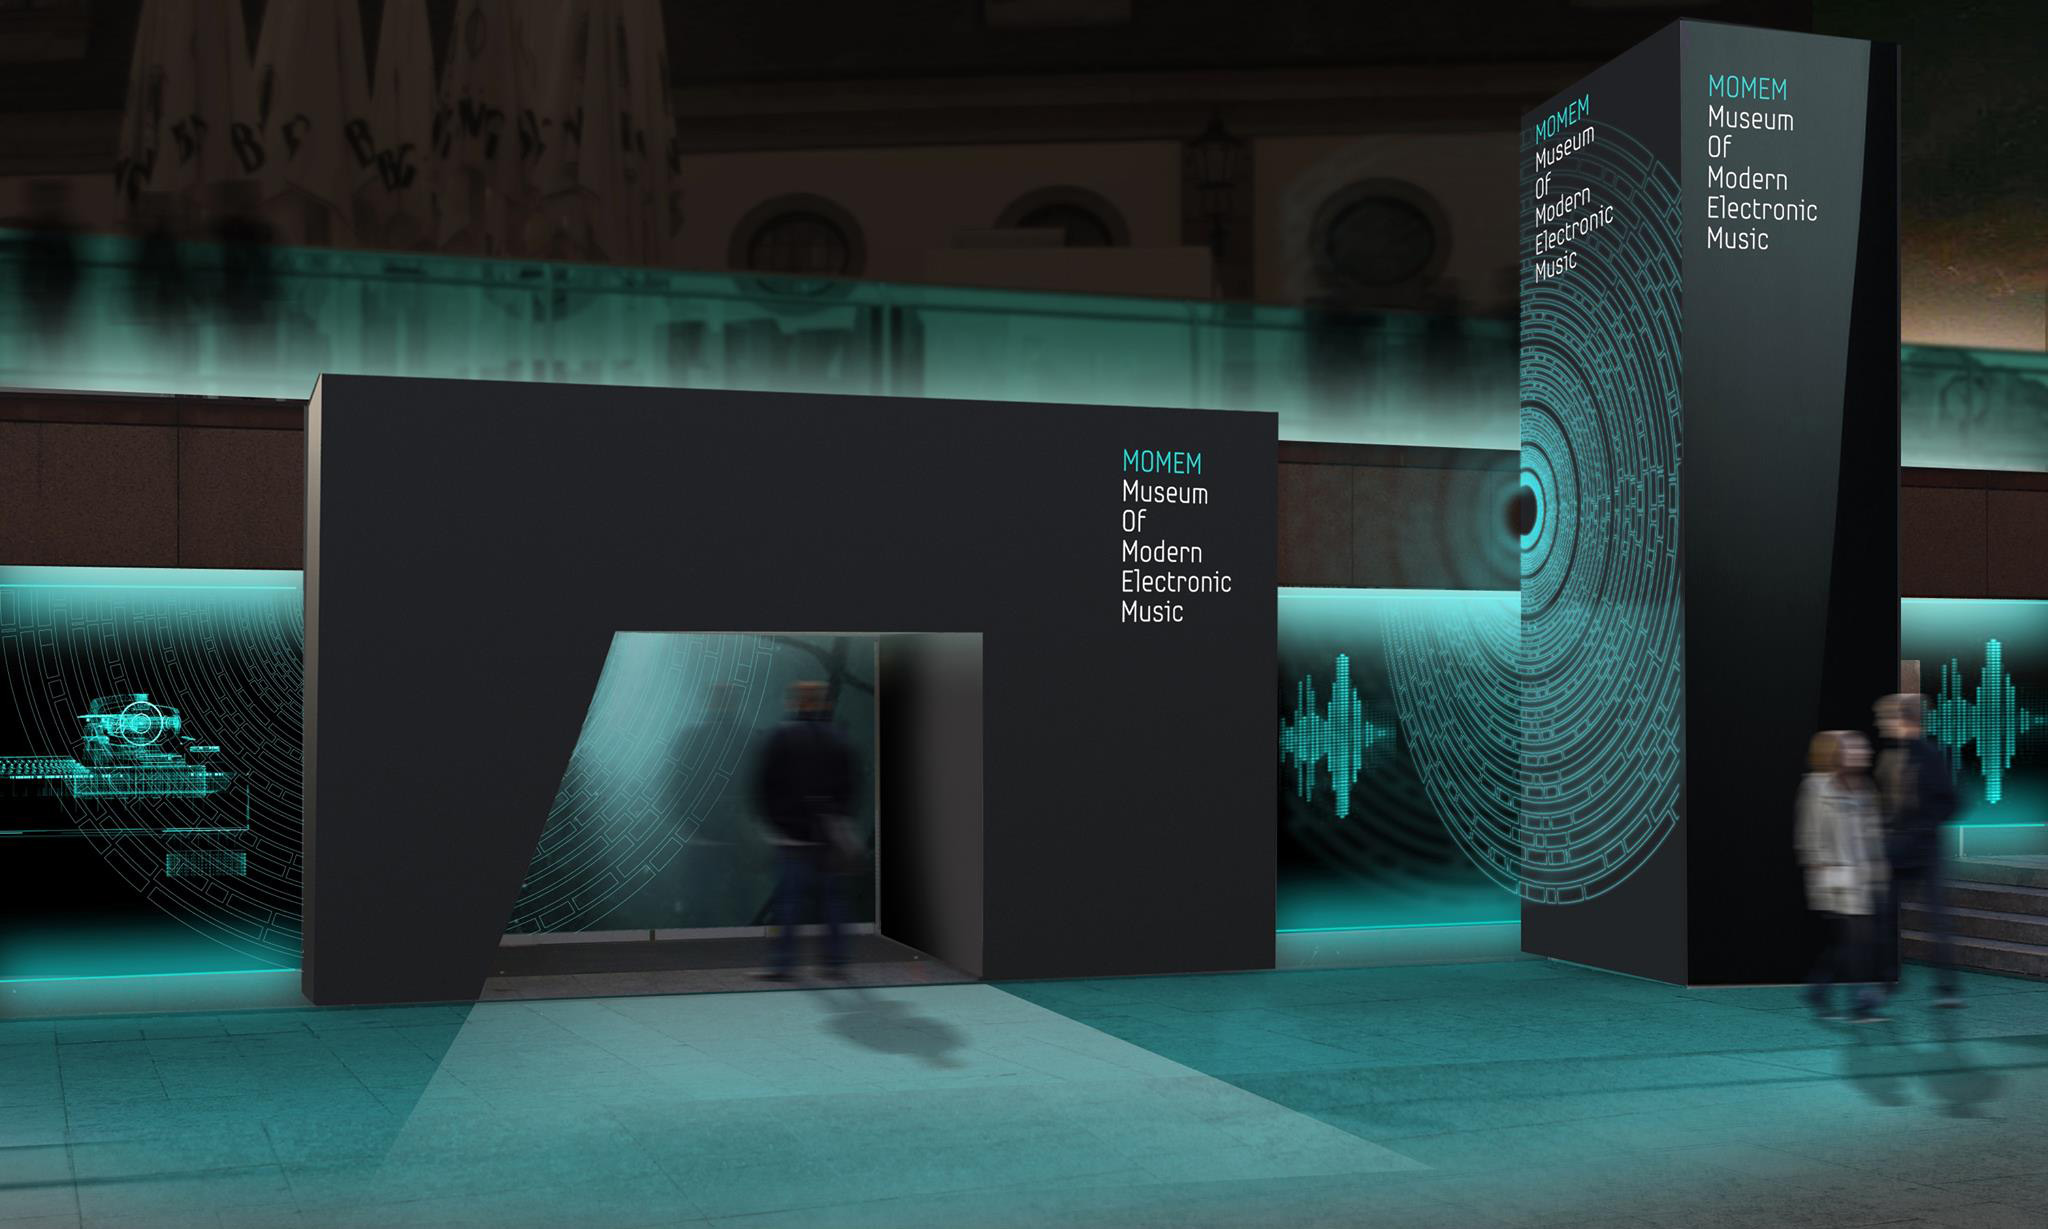 法兰克福现代电子音乐博物馆将于 2022 年开放